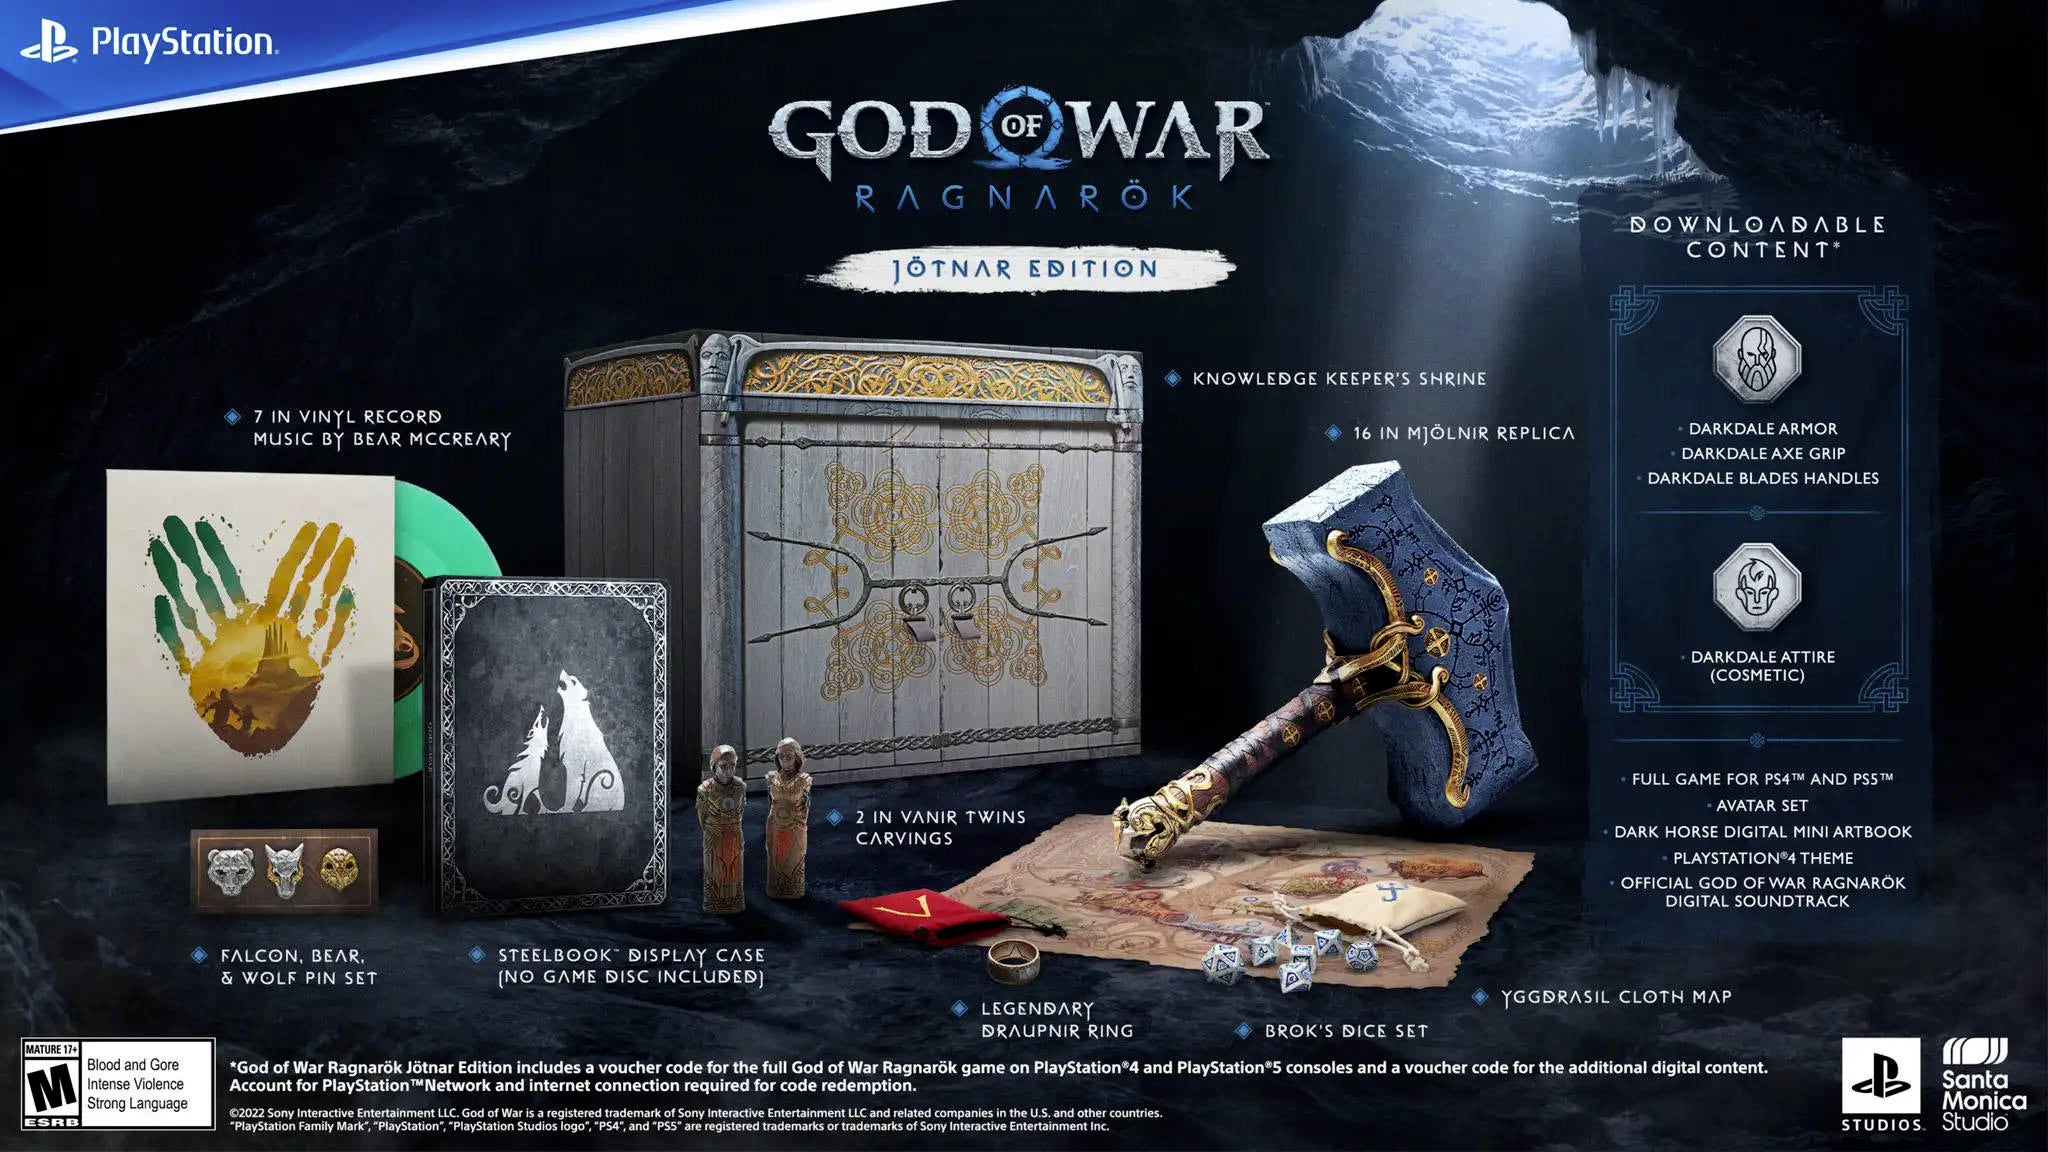 God of War Ragnarok release date  price, PS5 bundle & pre-order